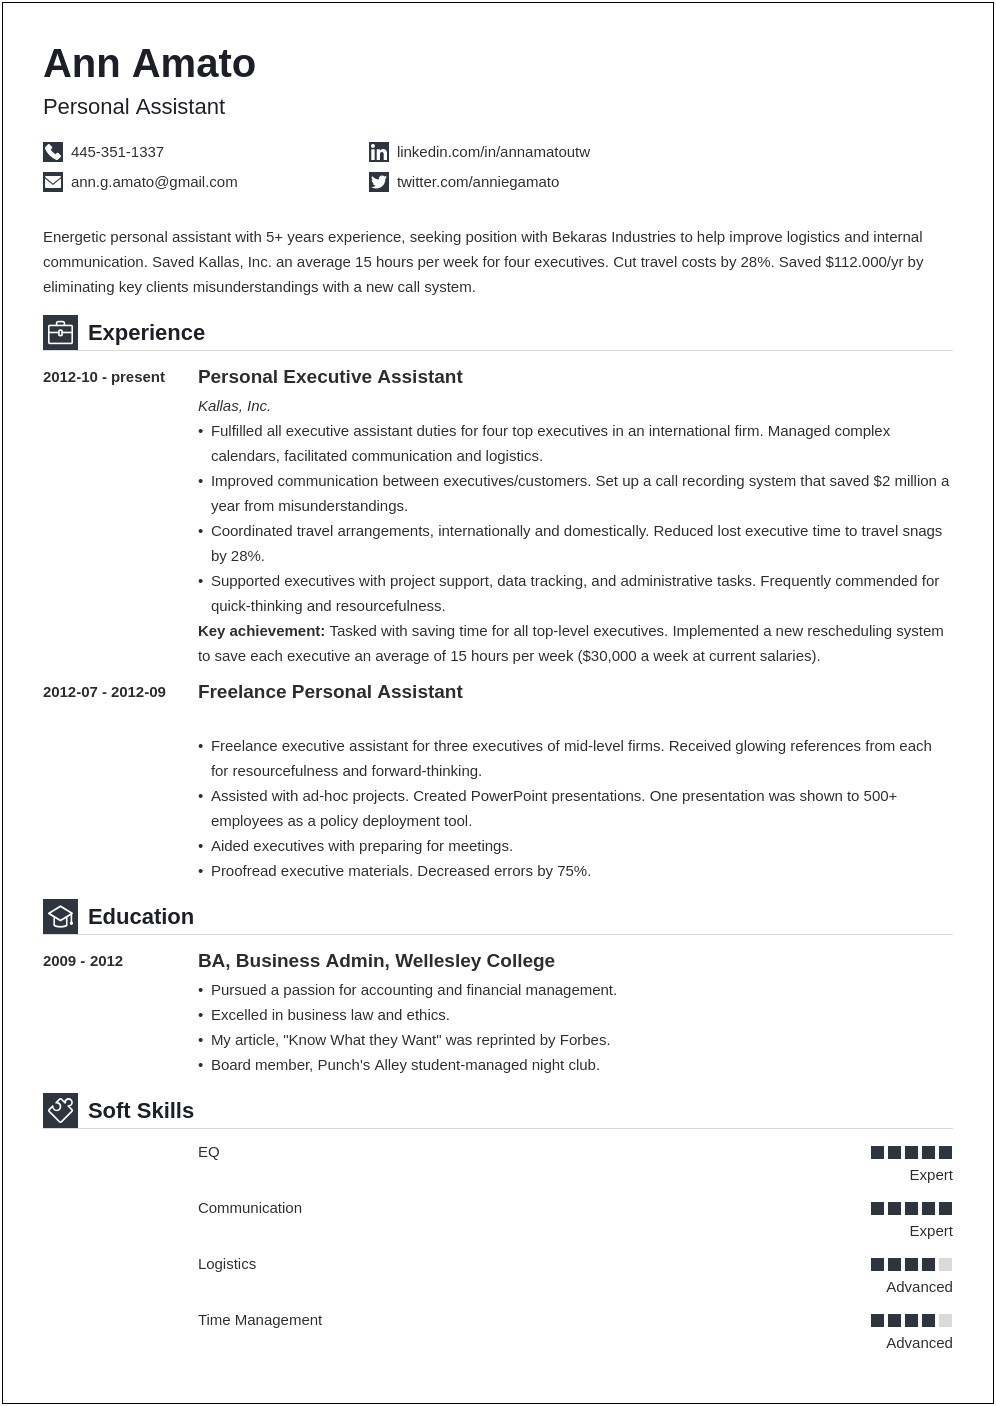 Resume Format For Applying Job